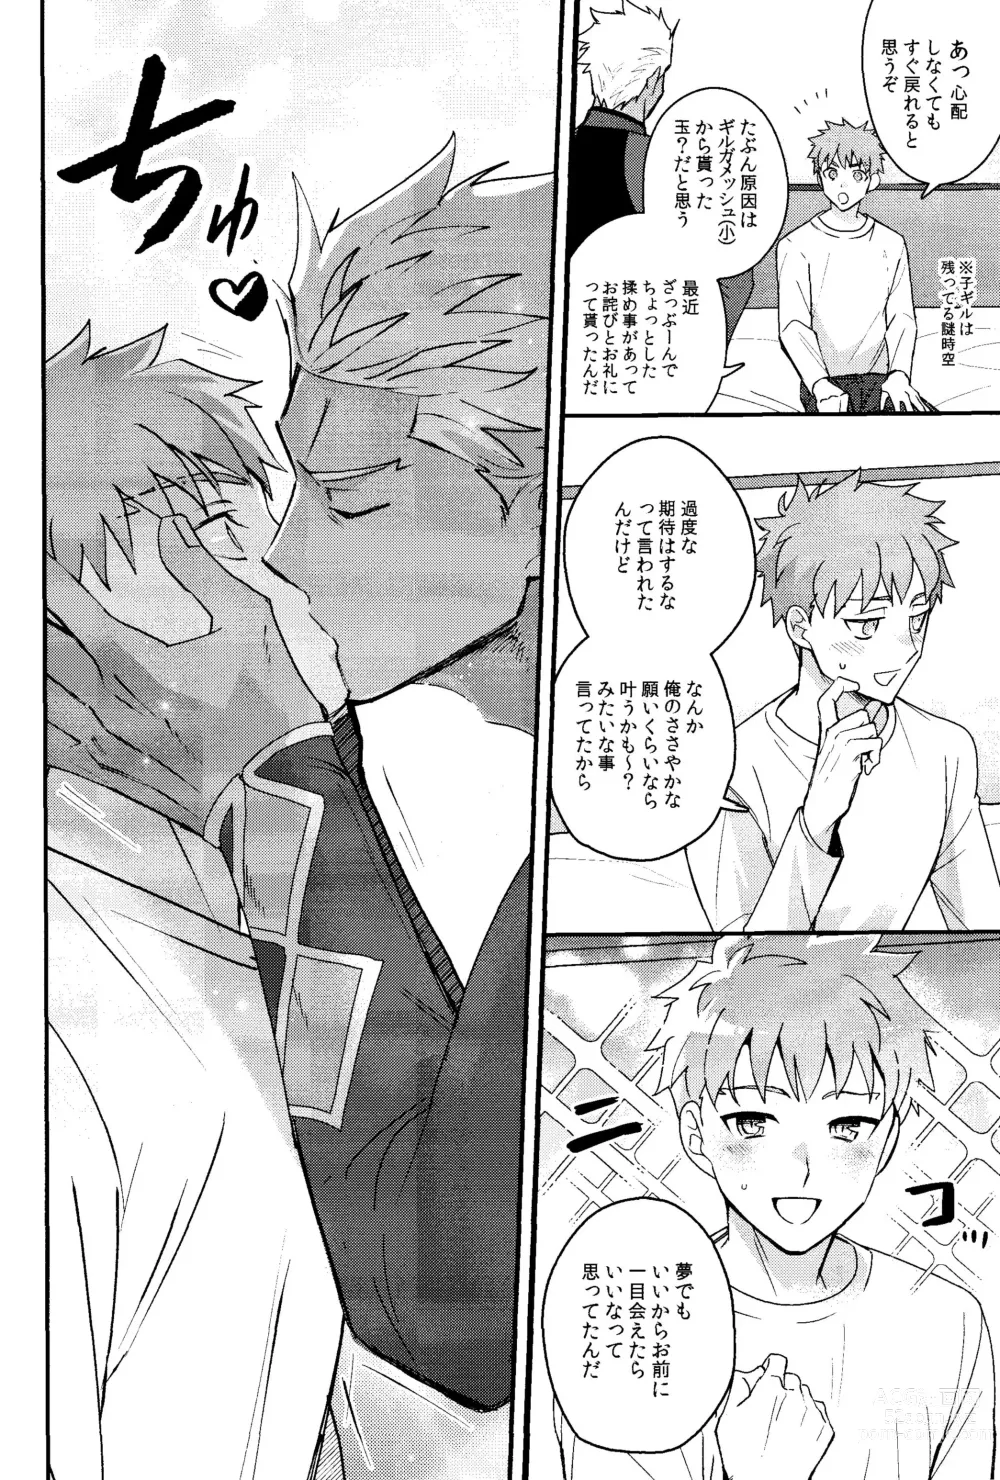 Page 7 of doujinshi Iru